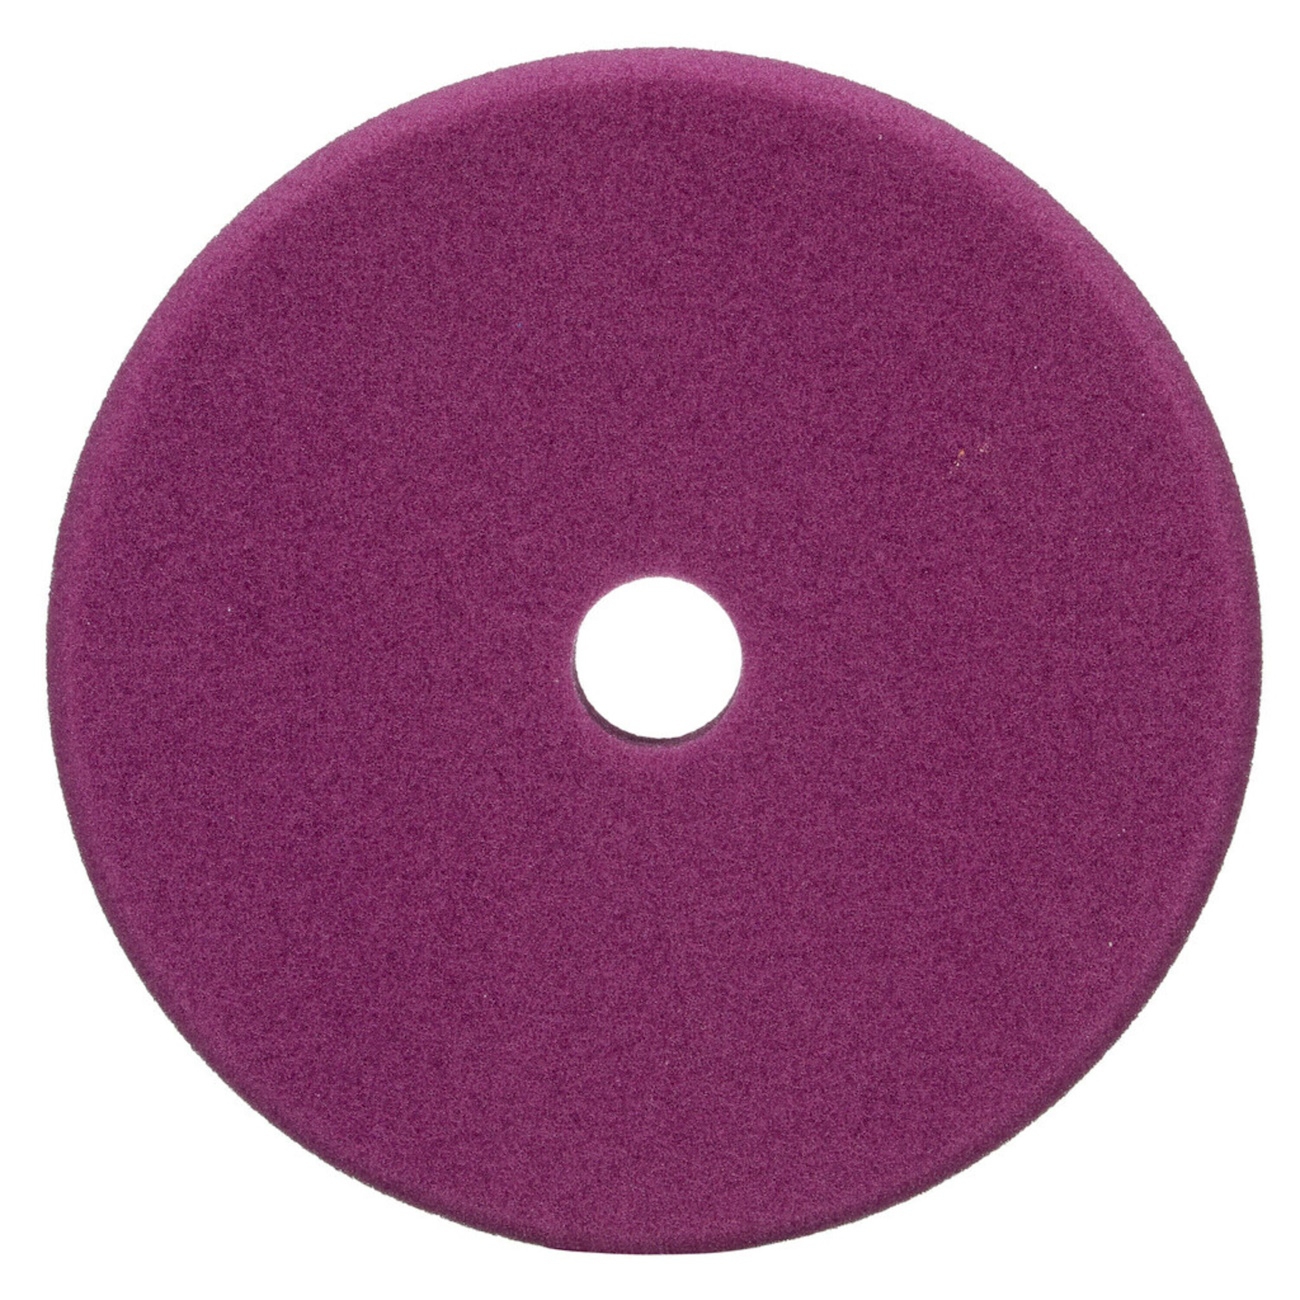 3M Perfect-it Tampon de polissage fin en mousse pour polisseuse excentrique, violet, 130 mm, 34123 (paquet = 2 pièces)